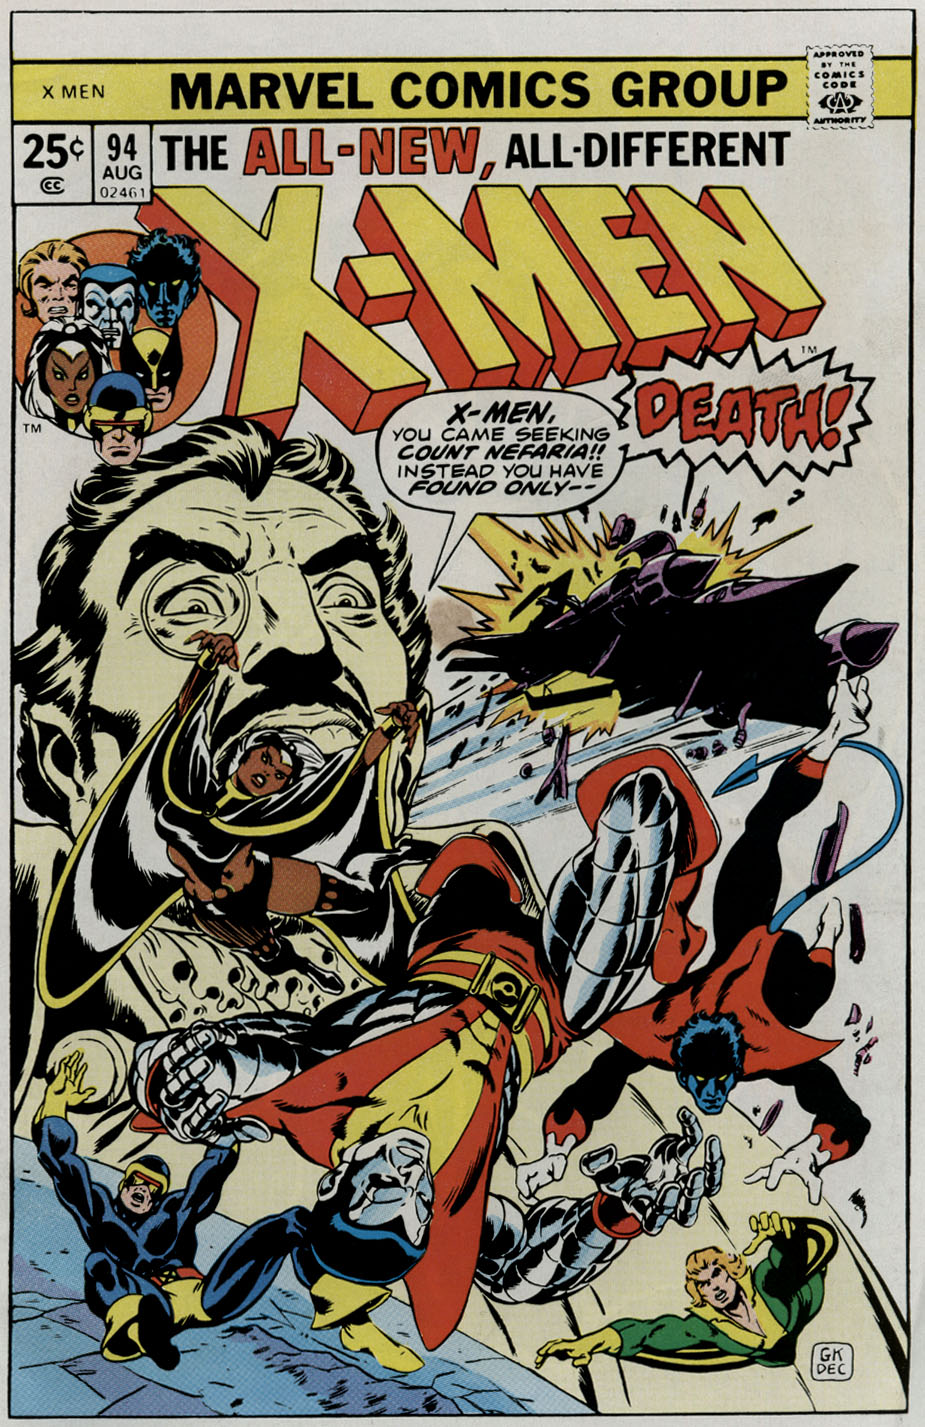 X-Men Vol. 1 #94